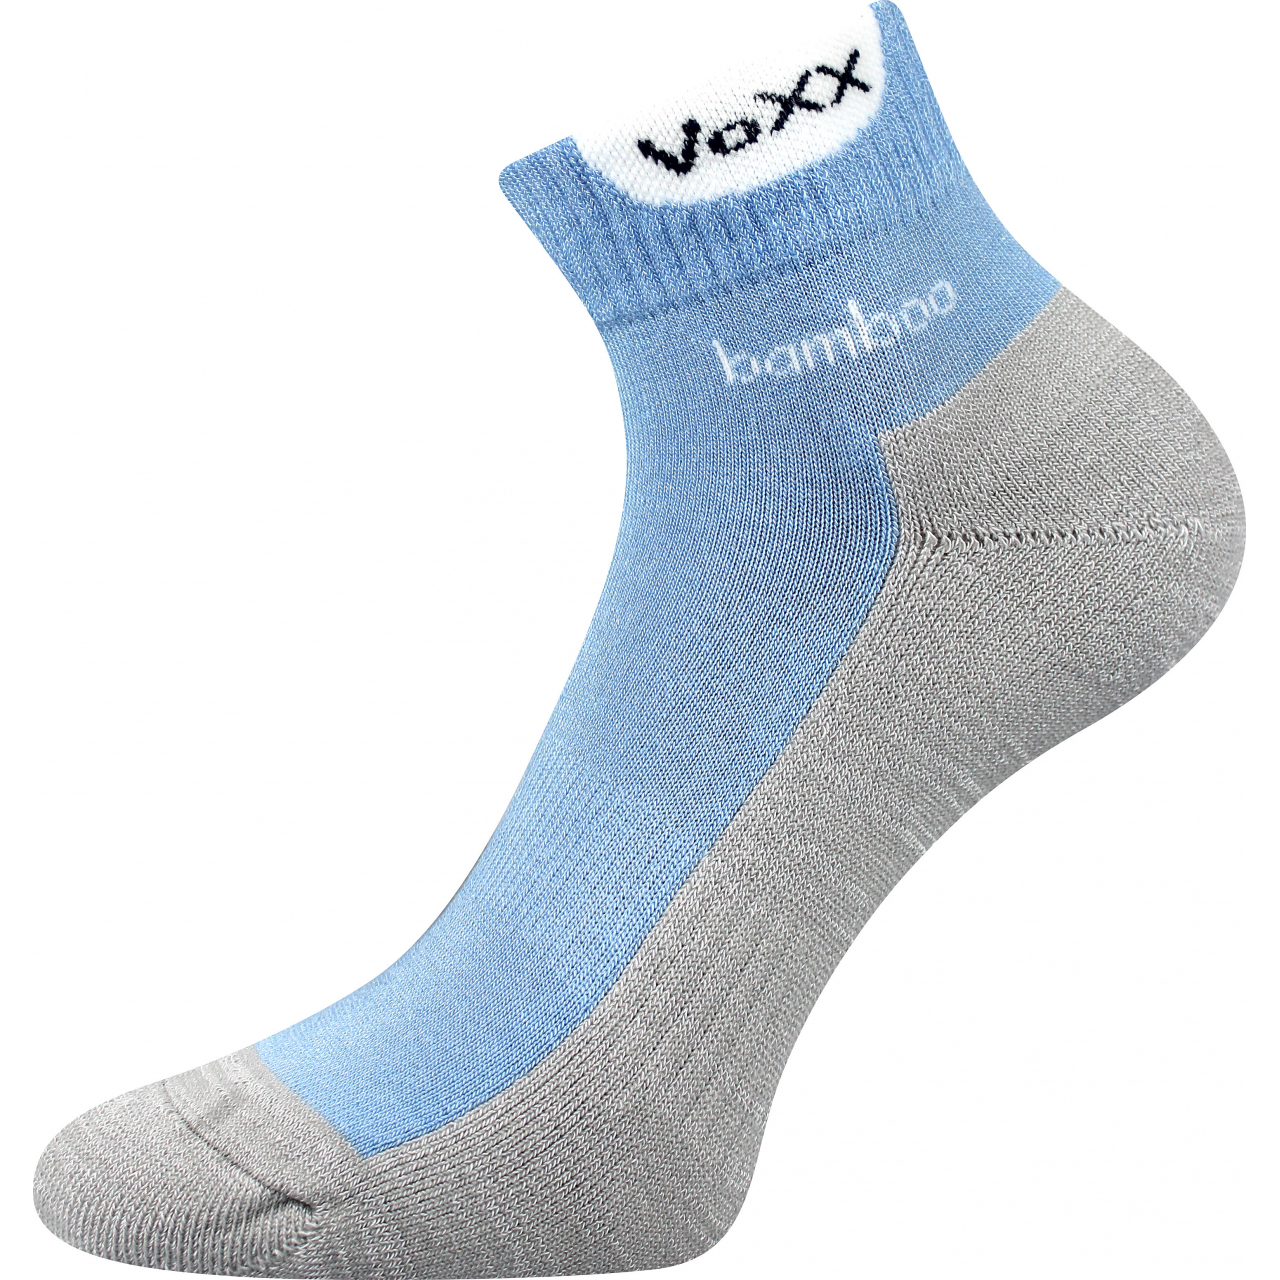 Ponožky sportovní Voxx Brooke - světle modré-šedé, 43-46